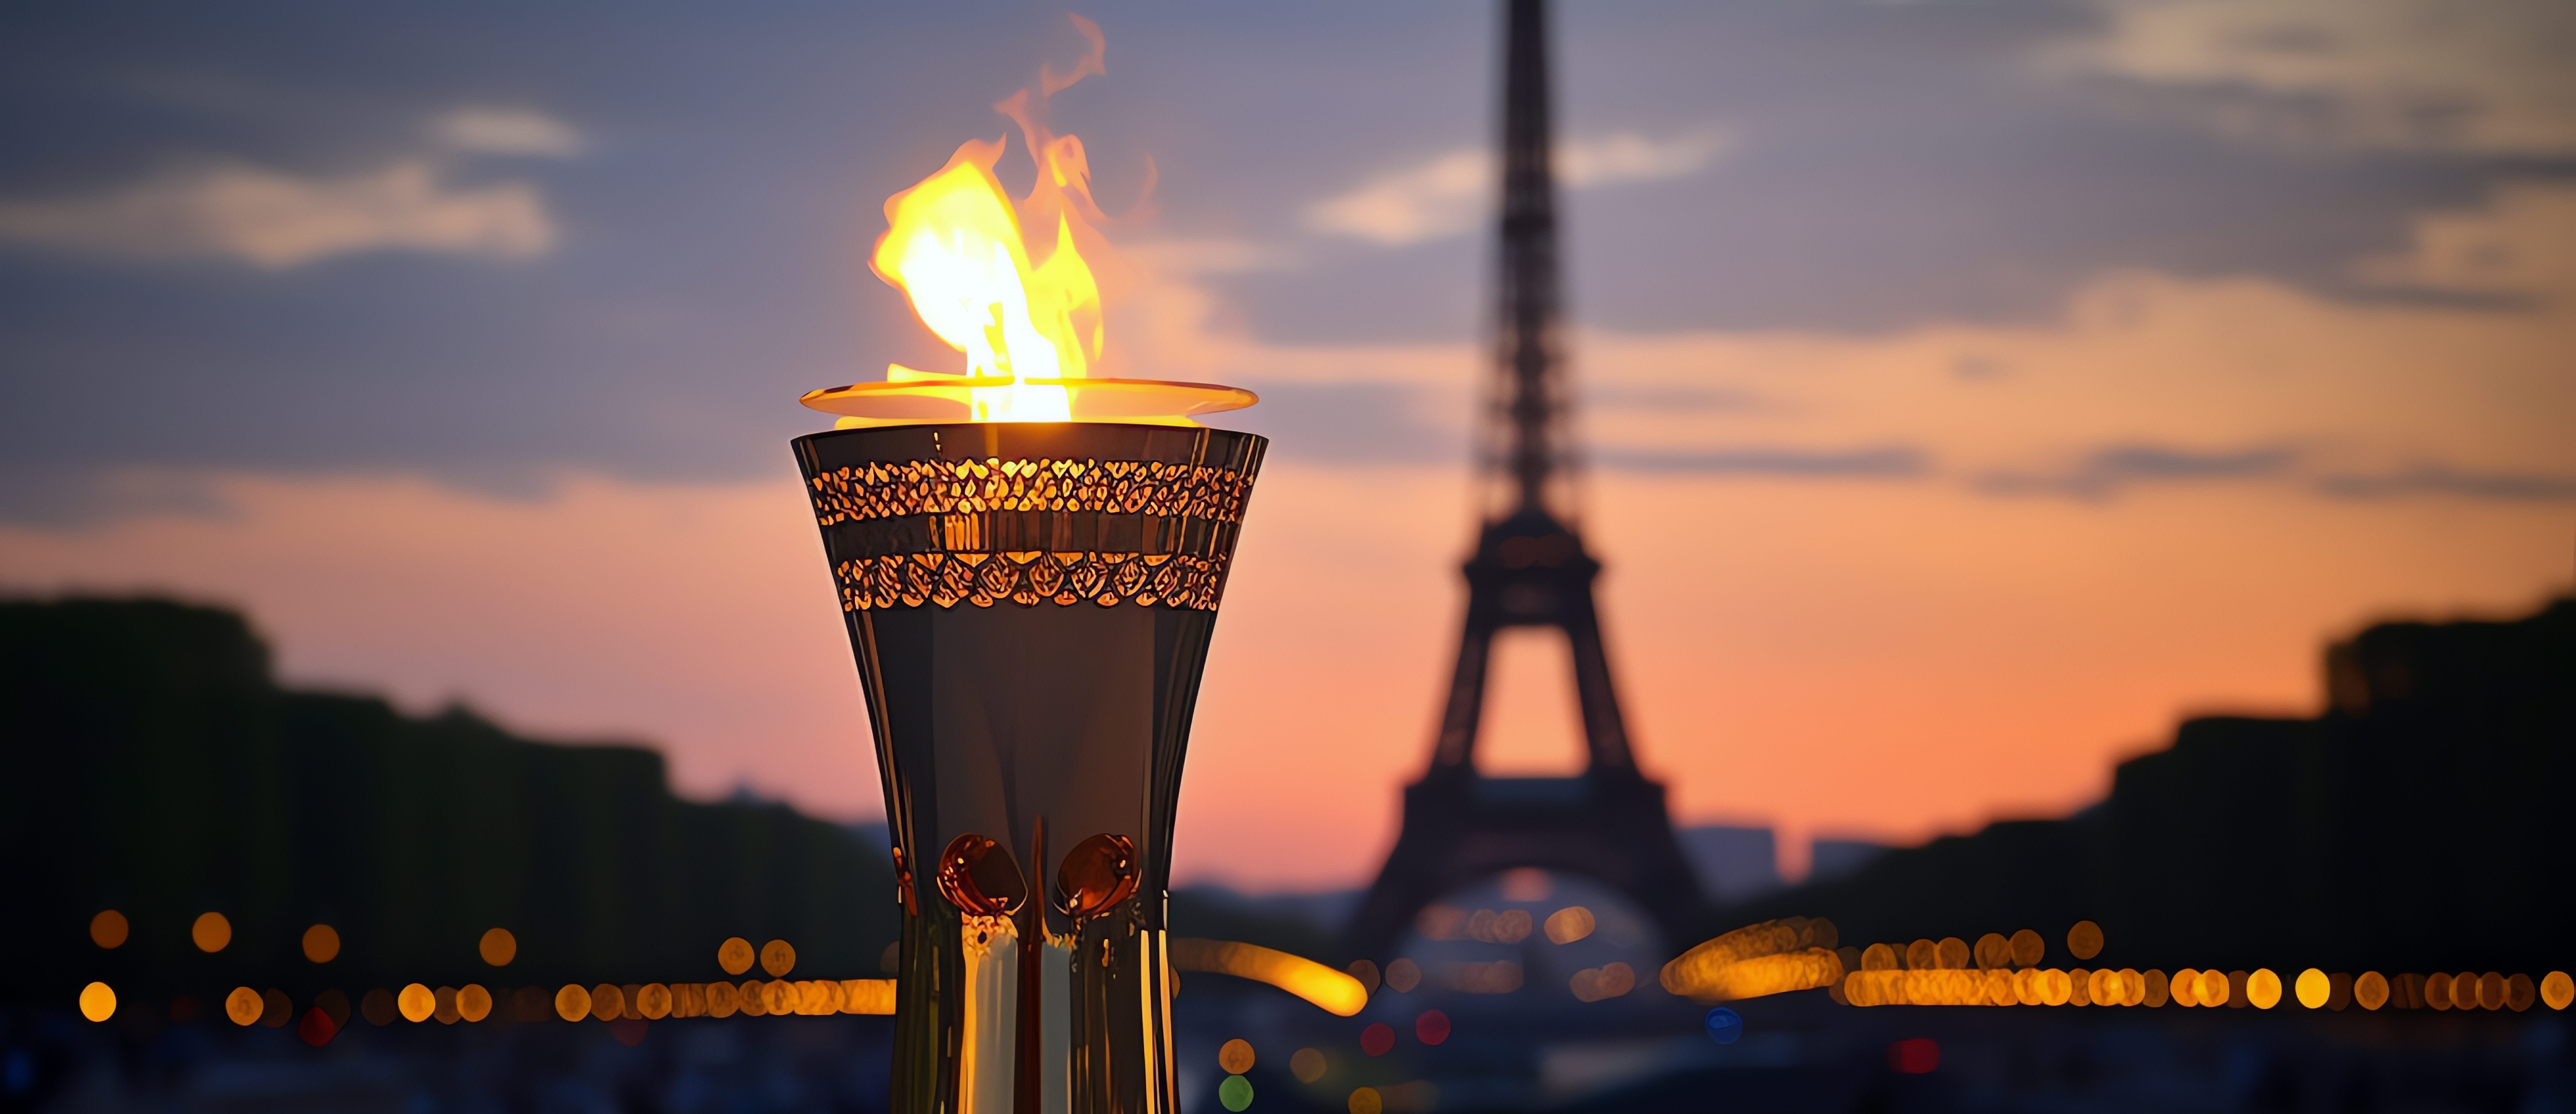 flamme olympique devant la Tour Eiffel